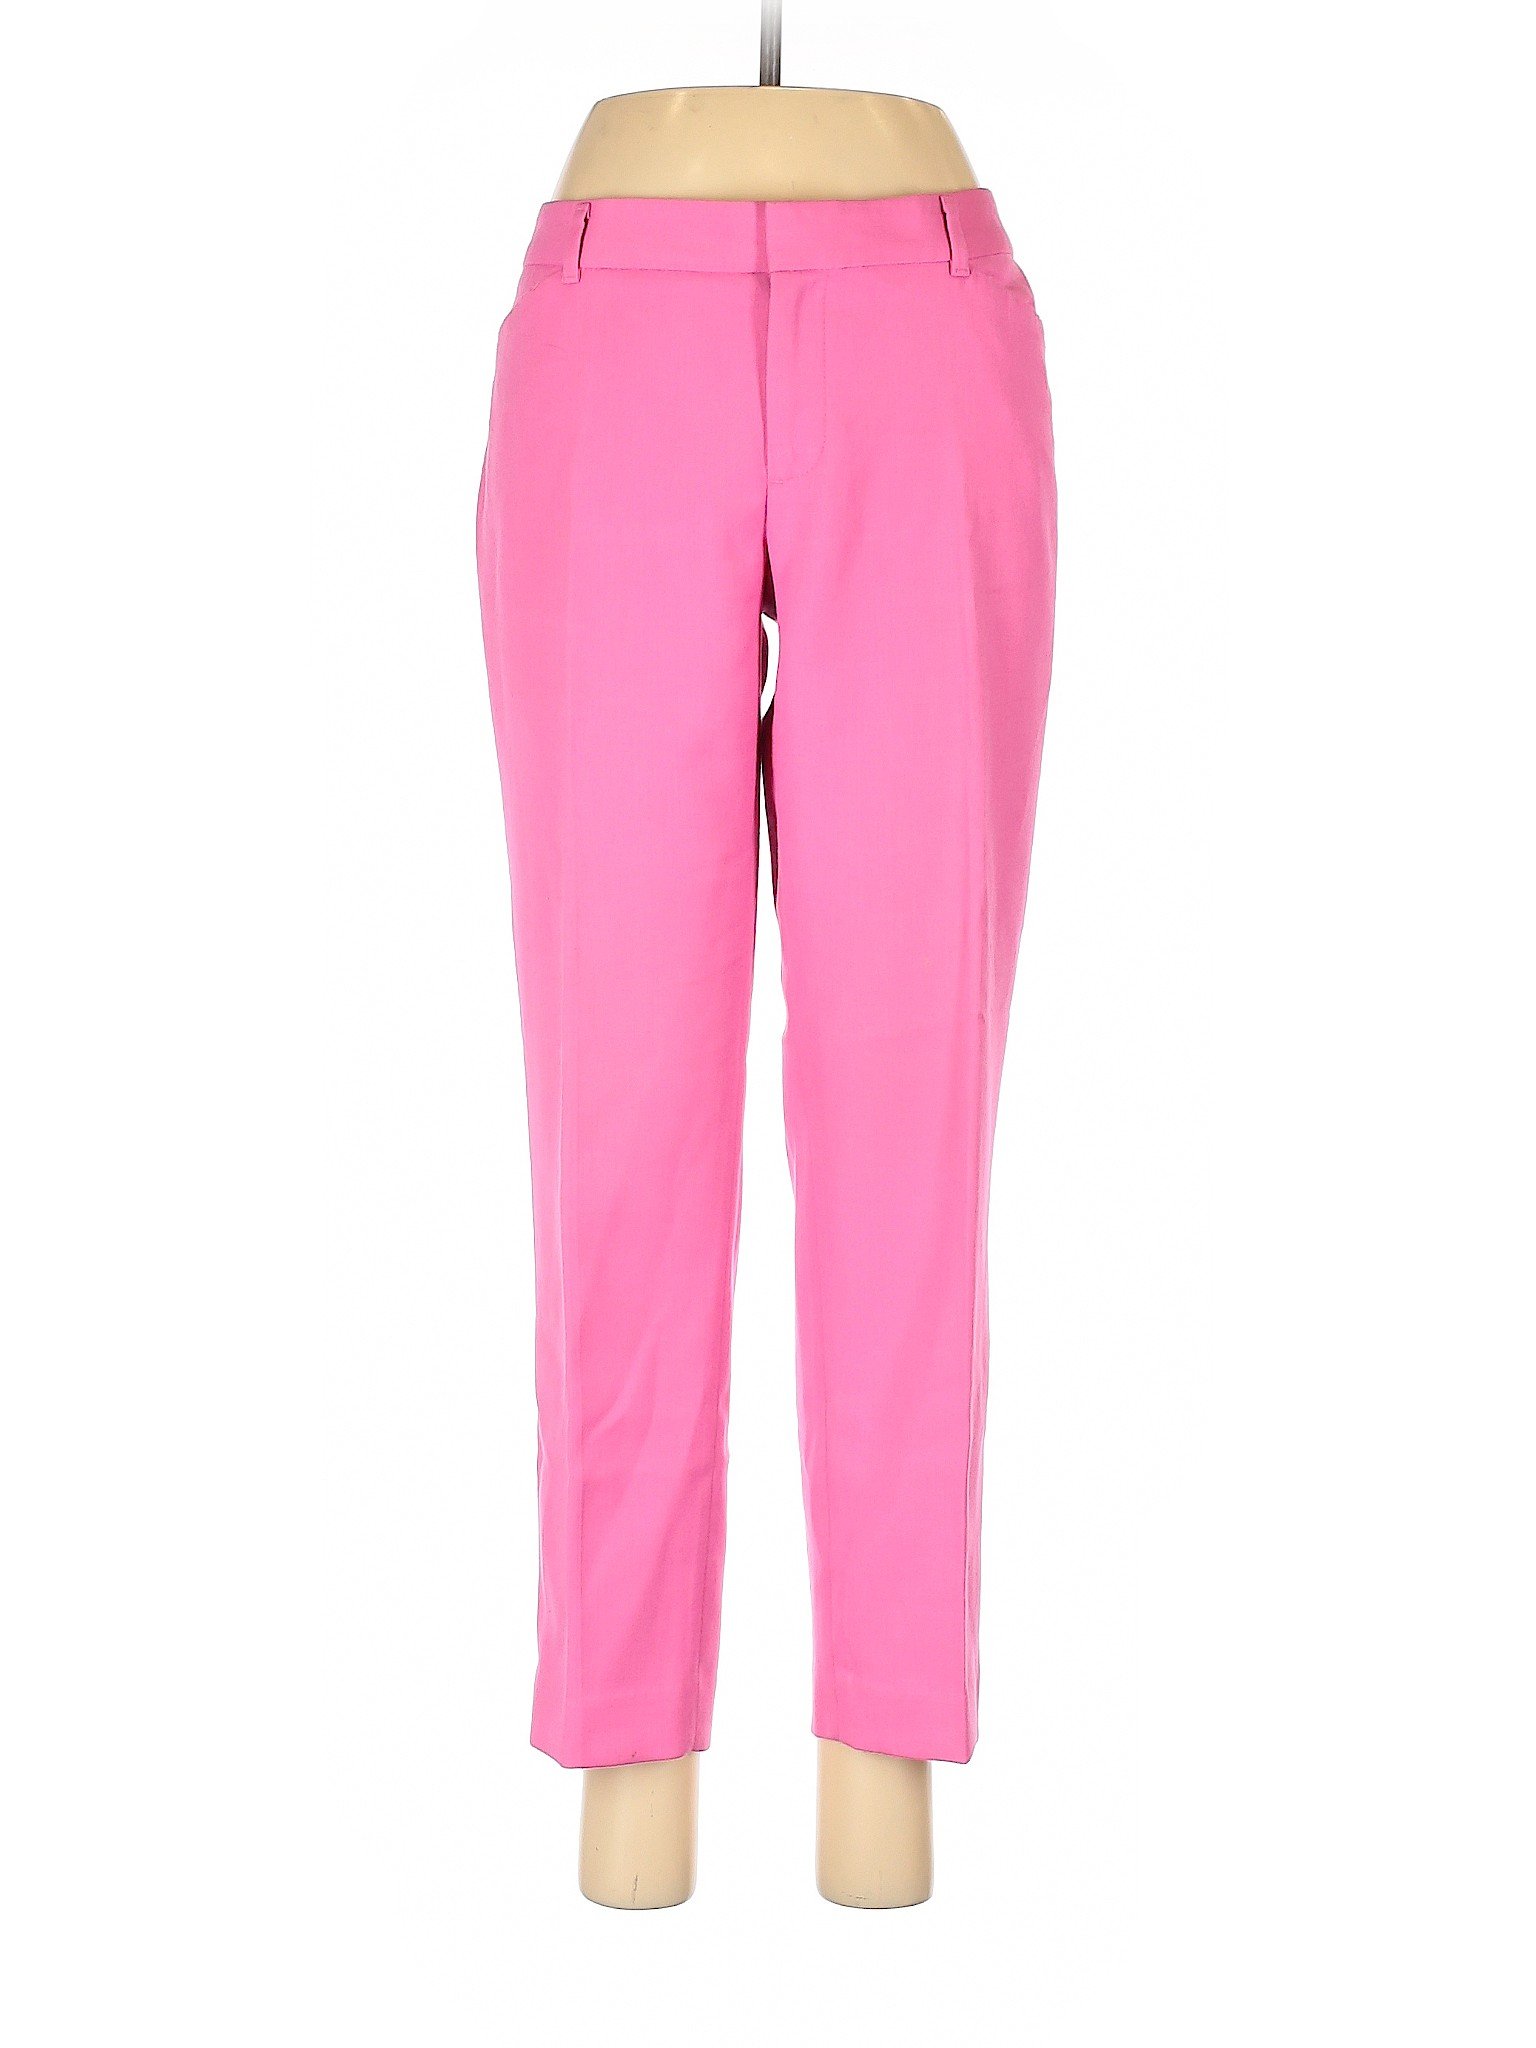 Gap Women Pink Dress Pants 6 | eBay